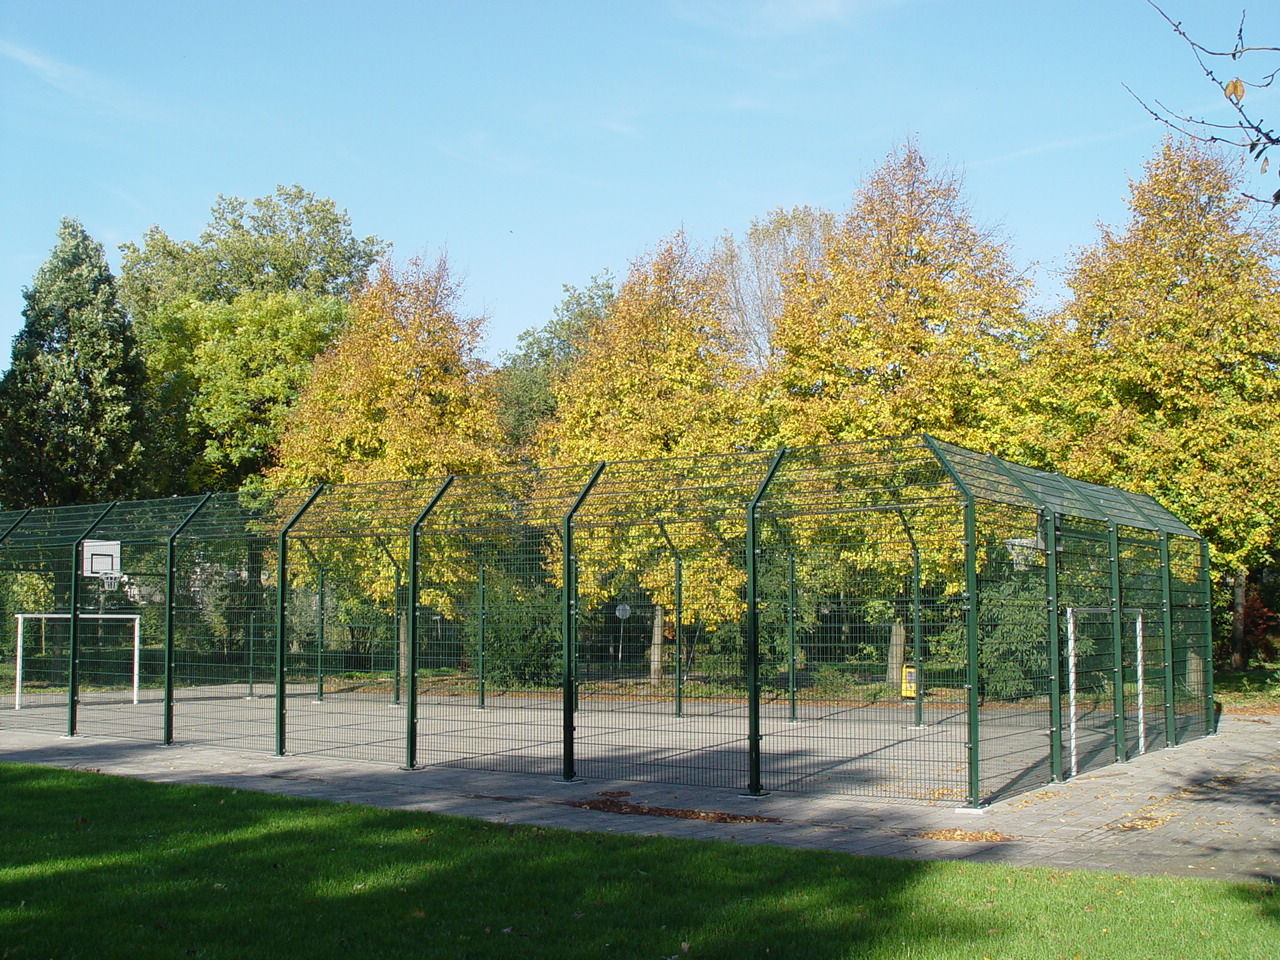 Voetbalkooi - ruim assortiment aan voetbalkooien - pannakooien - gesloten hekwerken om speelveld bij Hekwerk Soest B.V.